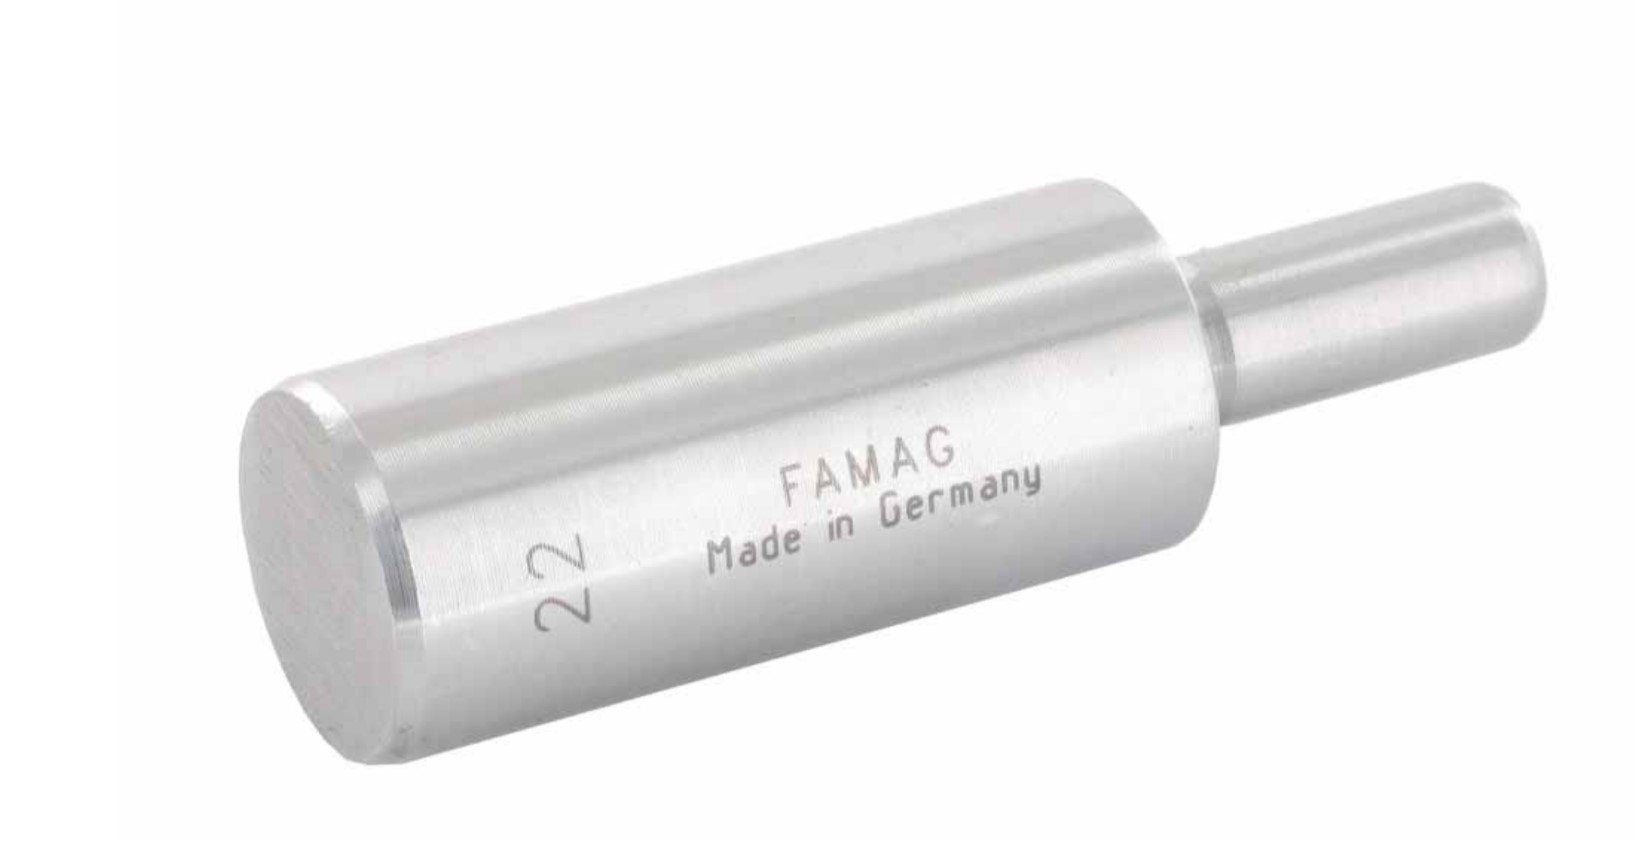 FAMAG SØ zu 8mm Holzbohrer 20mm, GL 1619.120 75mm, NL - 50mm, Führungszapfen 1614 FAMAG